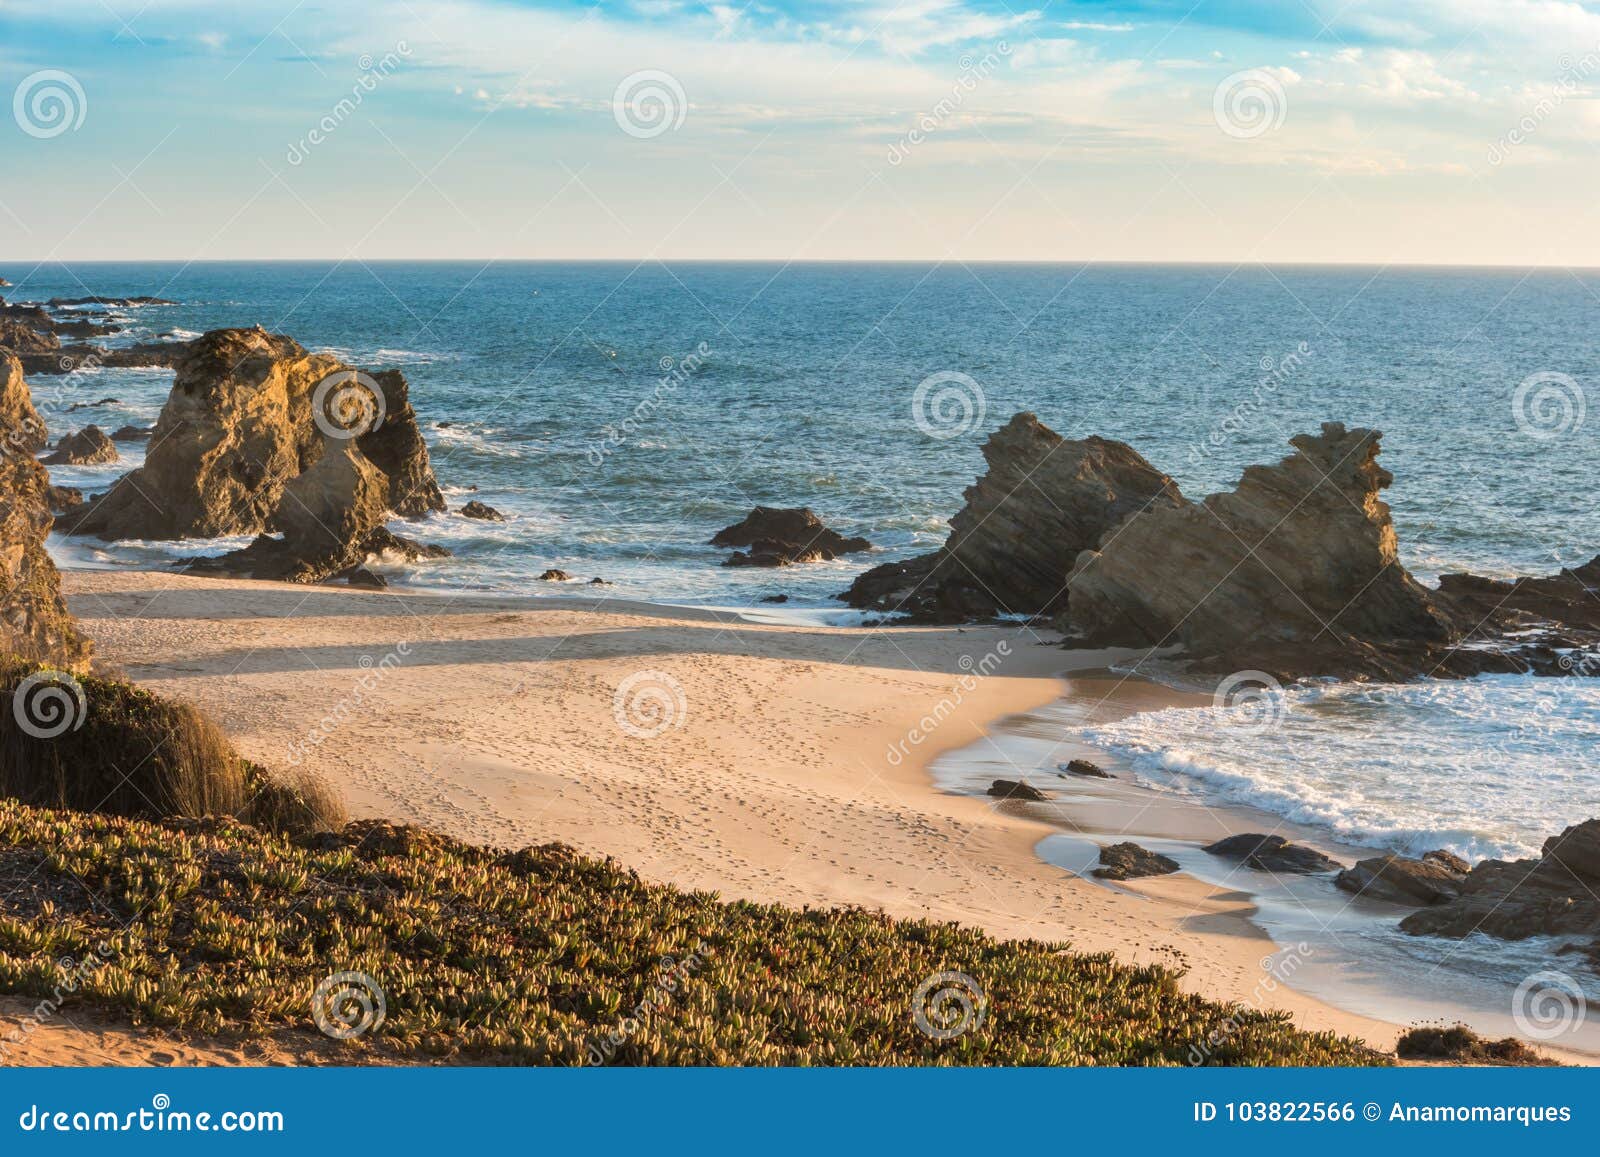 samouqueira beach with rocks in porto covo in alentejo, portugal